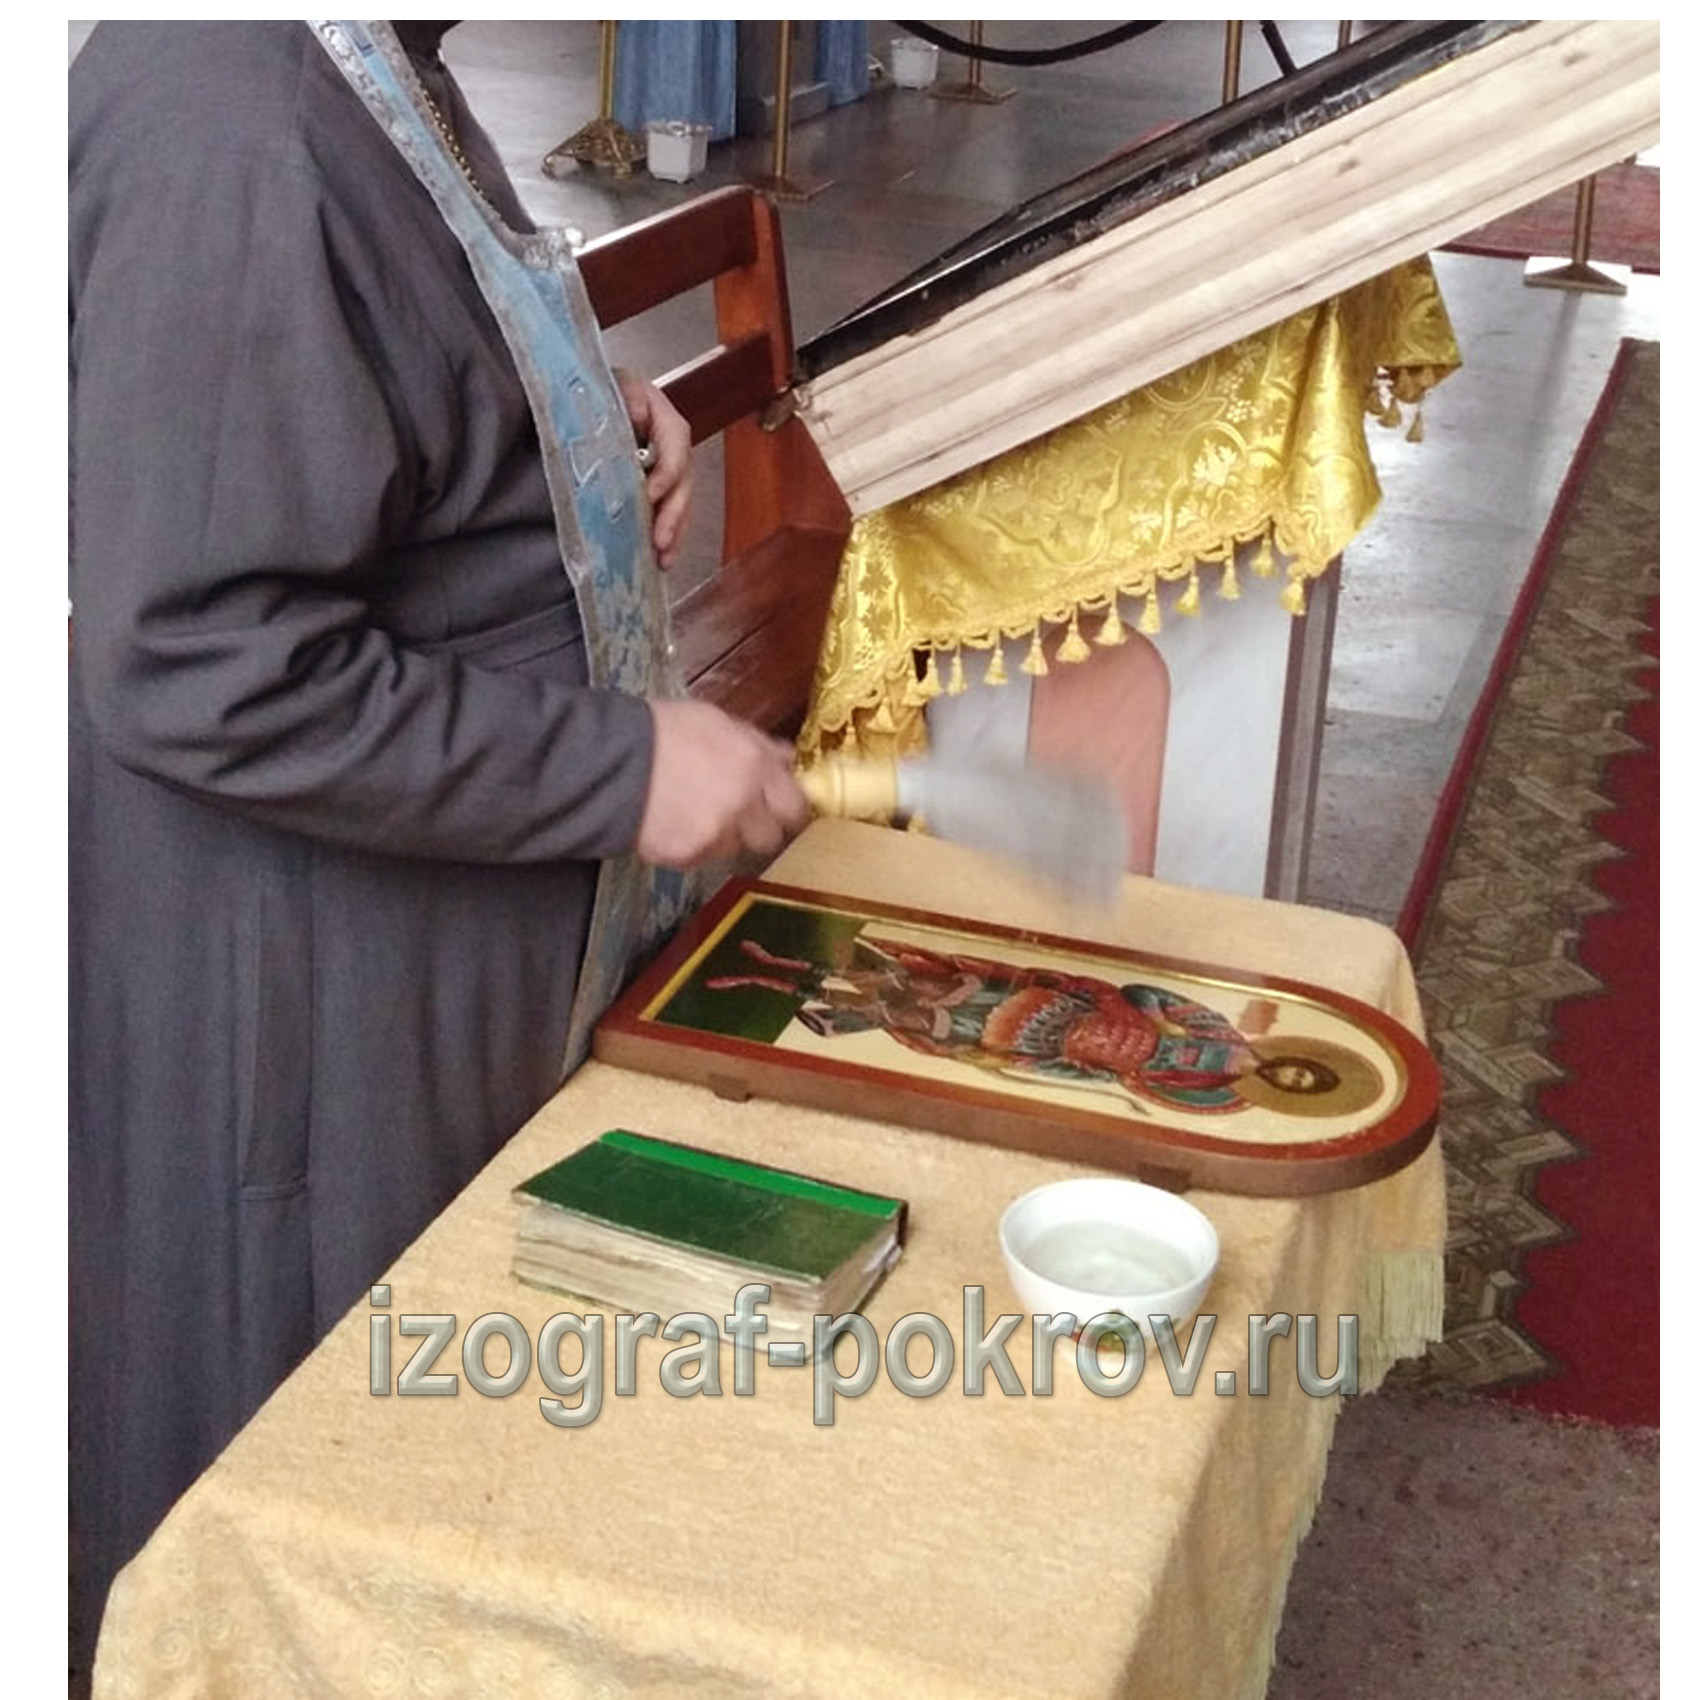 Готовая икона Никита Гофтский освящается в храме Покрова Пресвятой Богородицы